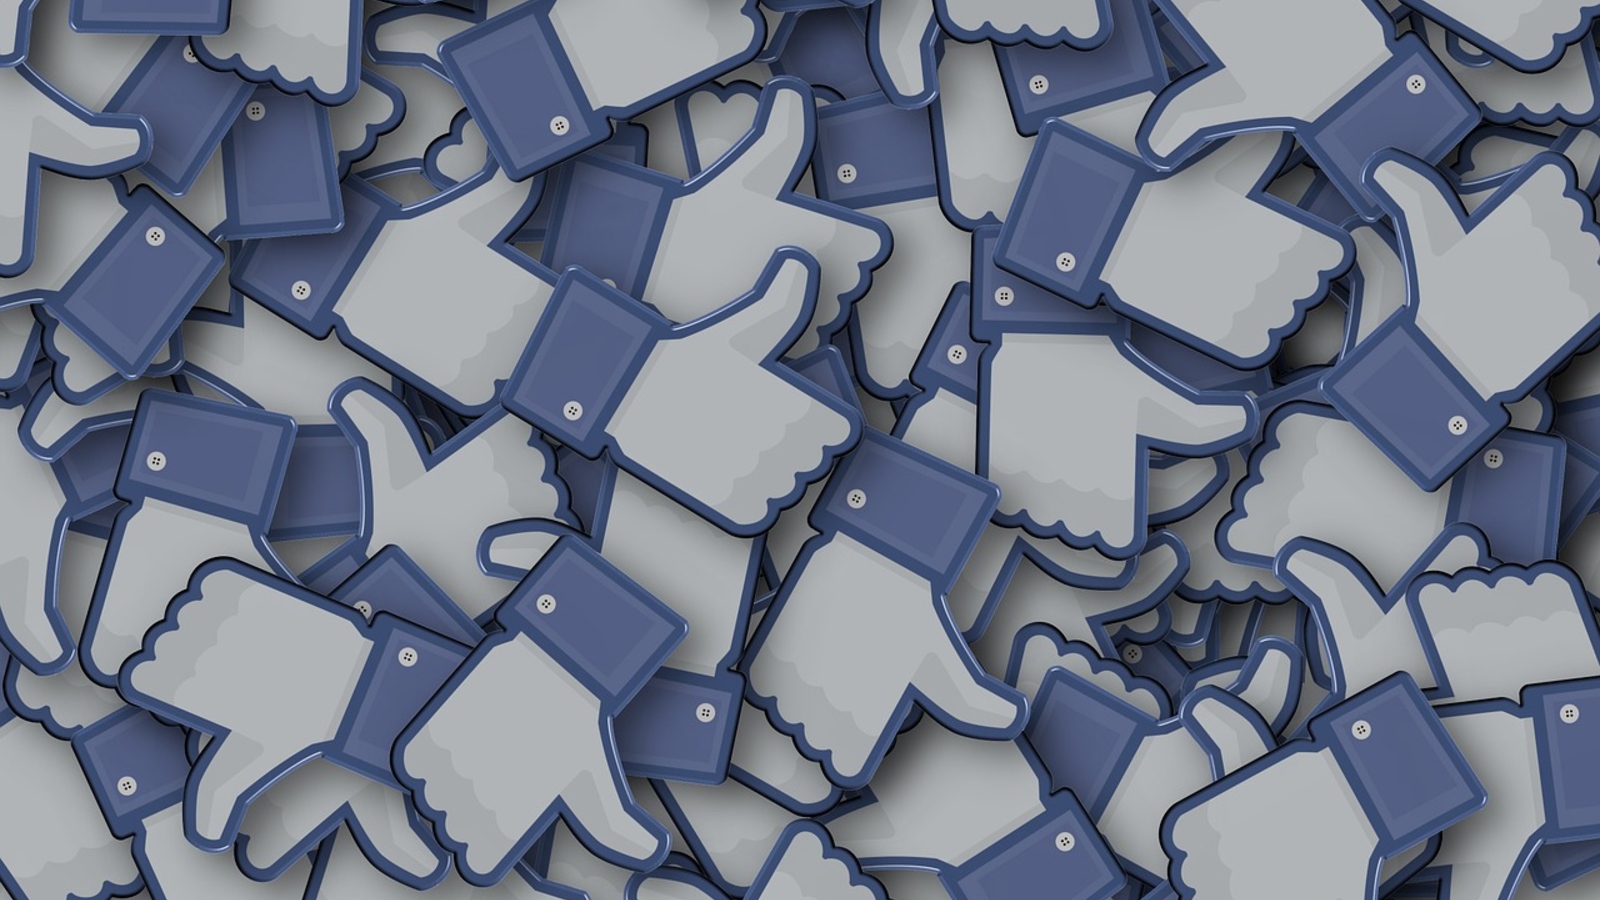 Données personnelles : Facebook menace de retirer ses réseaux sociaux d'Europe !